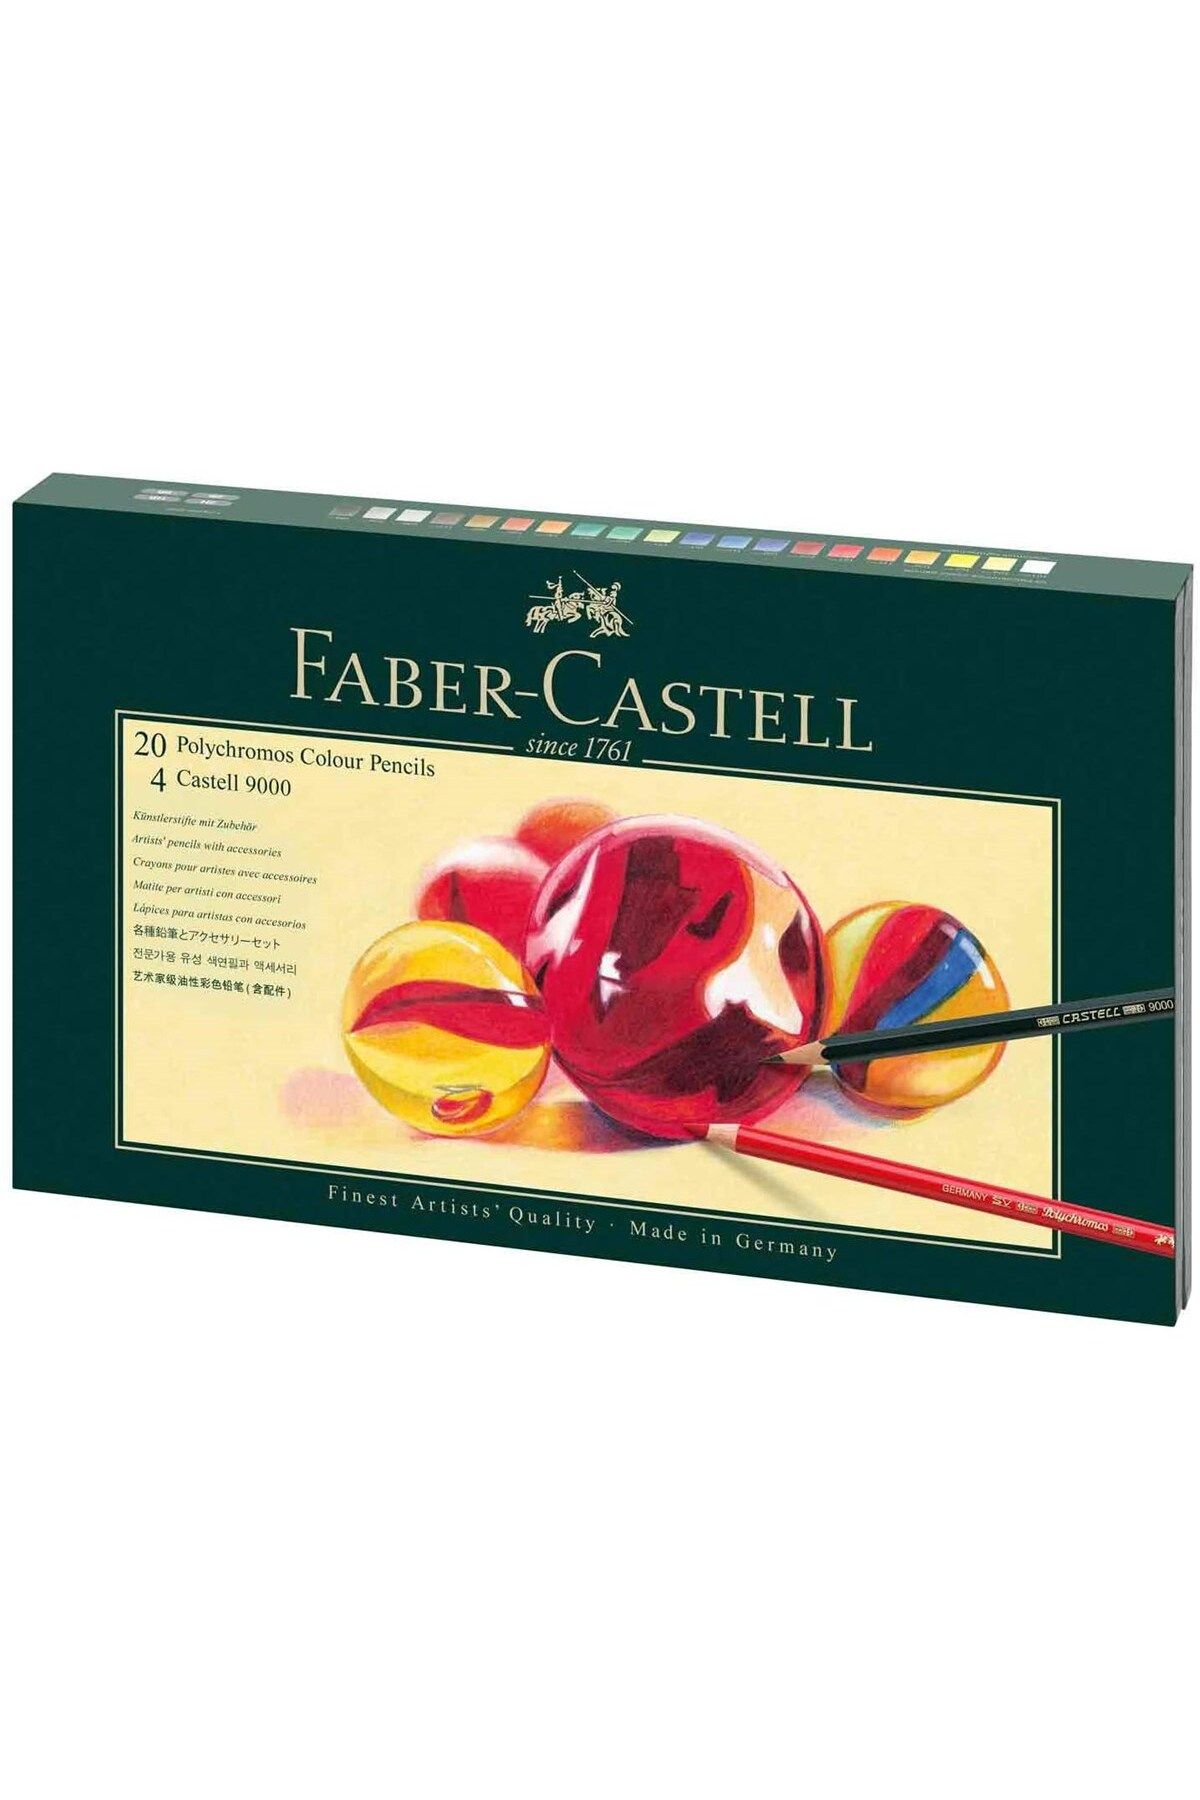 Faber Castell Faber-castell 20li Polychromos Sanatçı Boya Kalemleri Ve Aksesuarları Seti, 3,8 Mm Uç (210051)